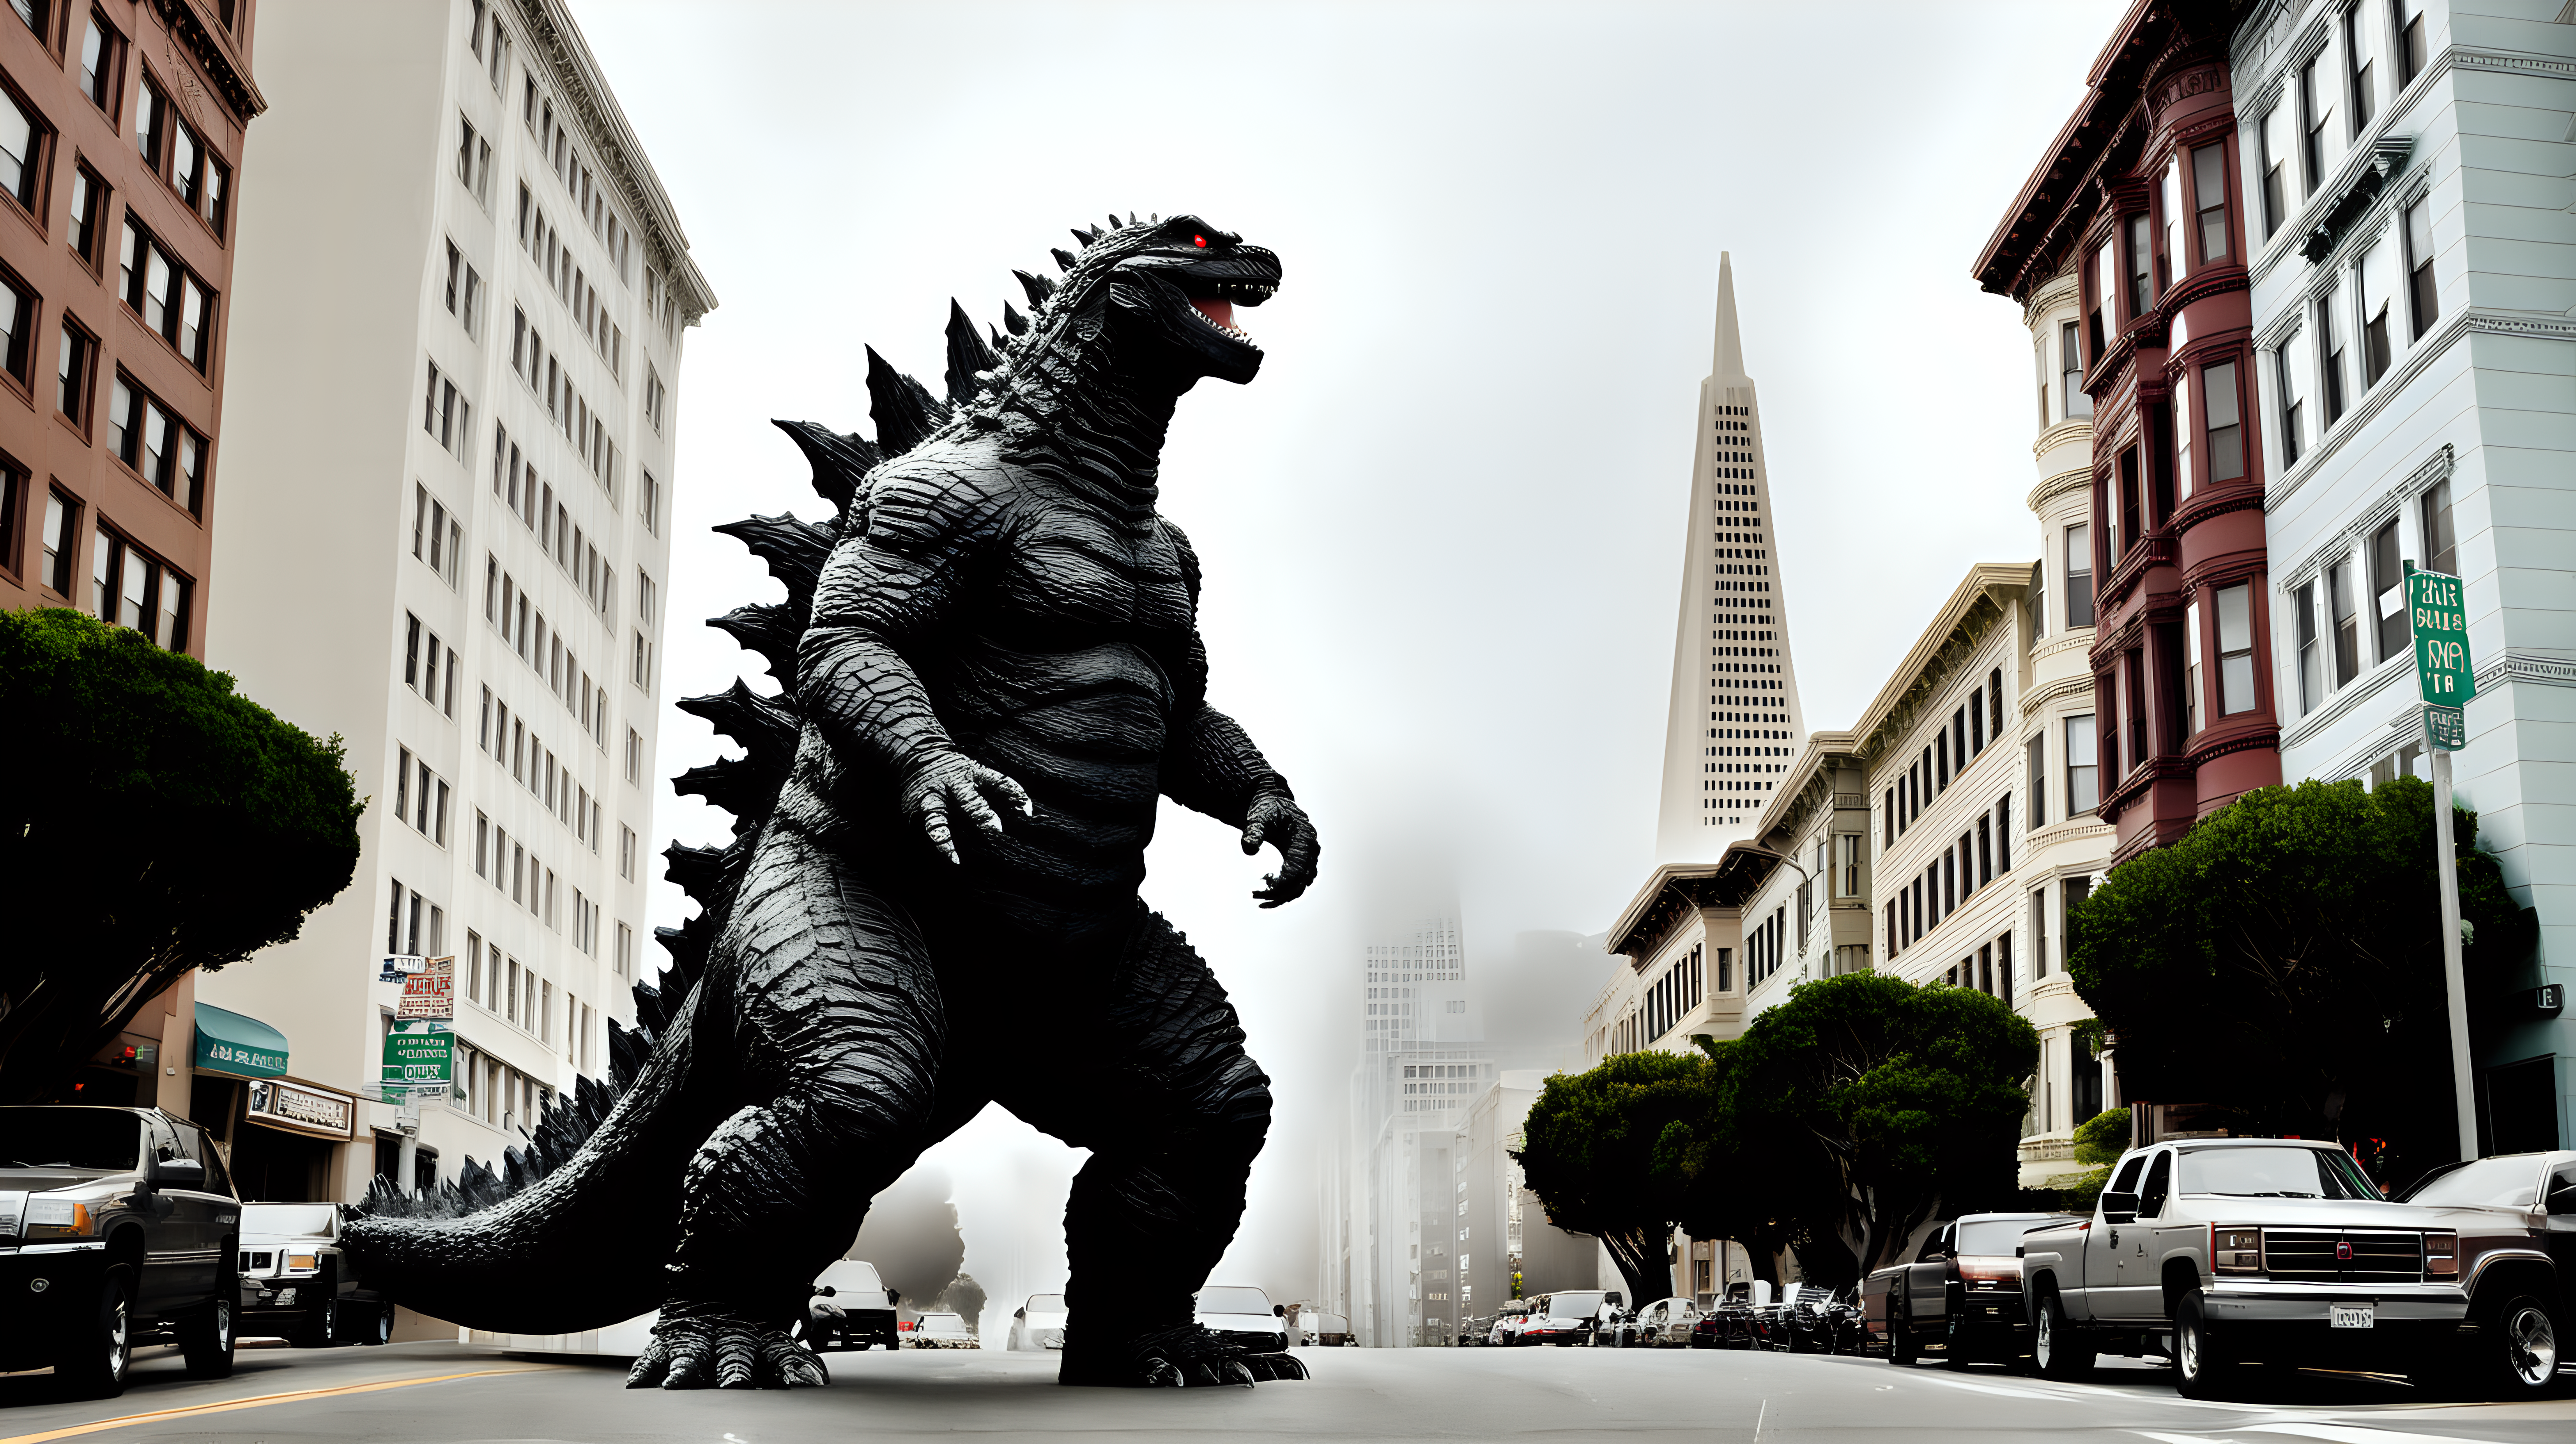 Godzilla on the streets of San Francisco